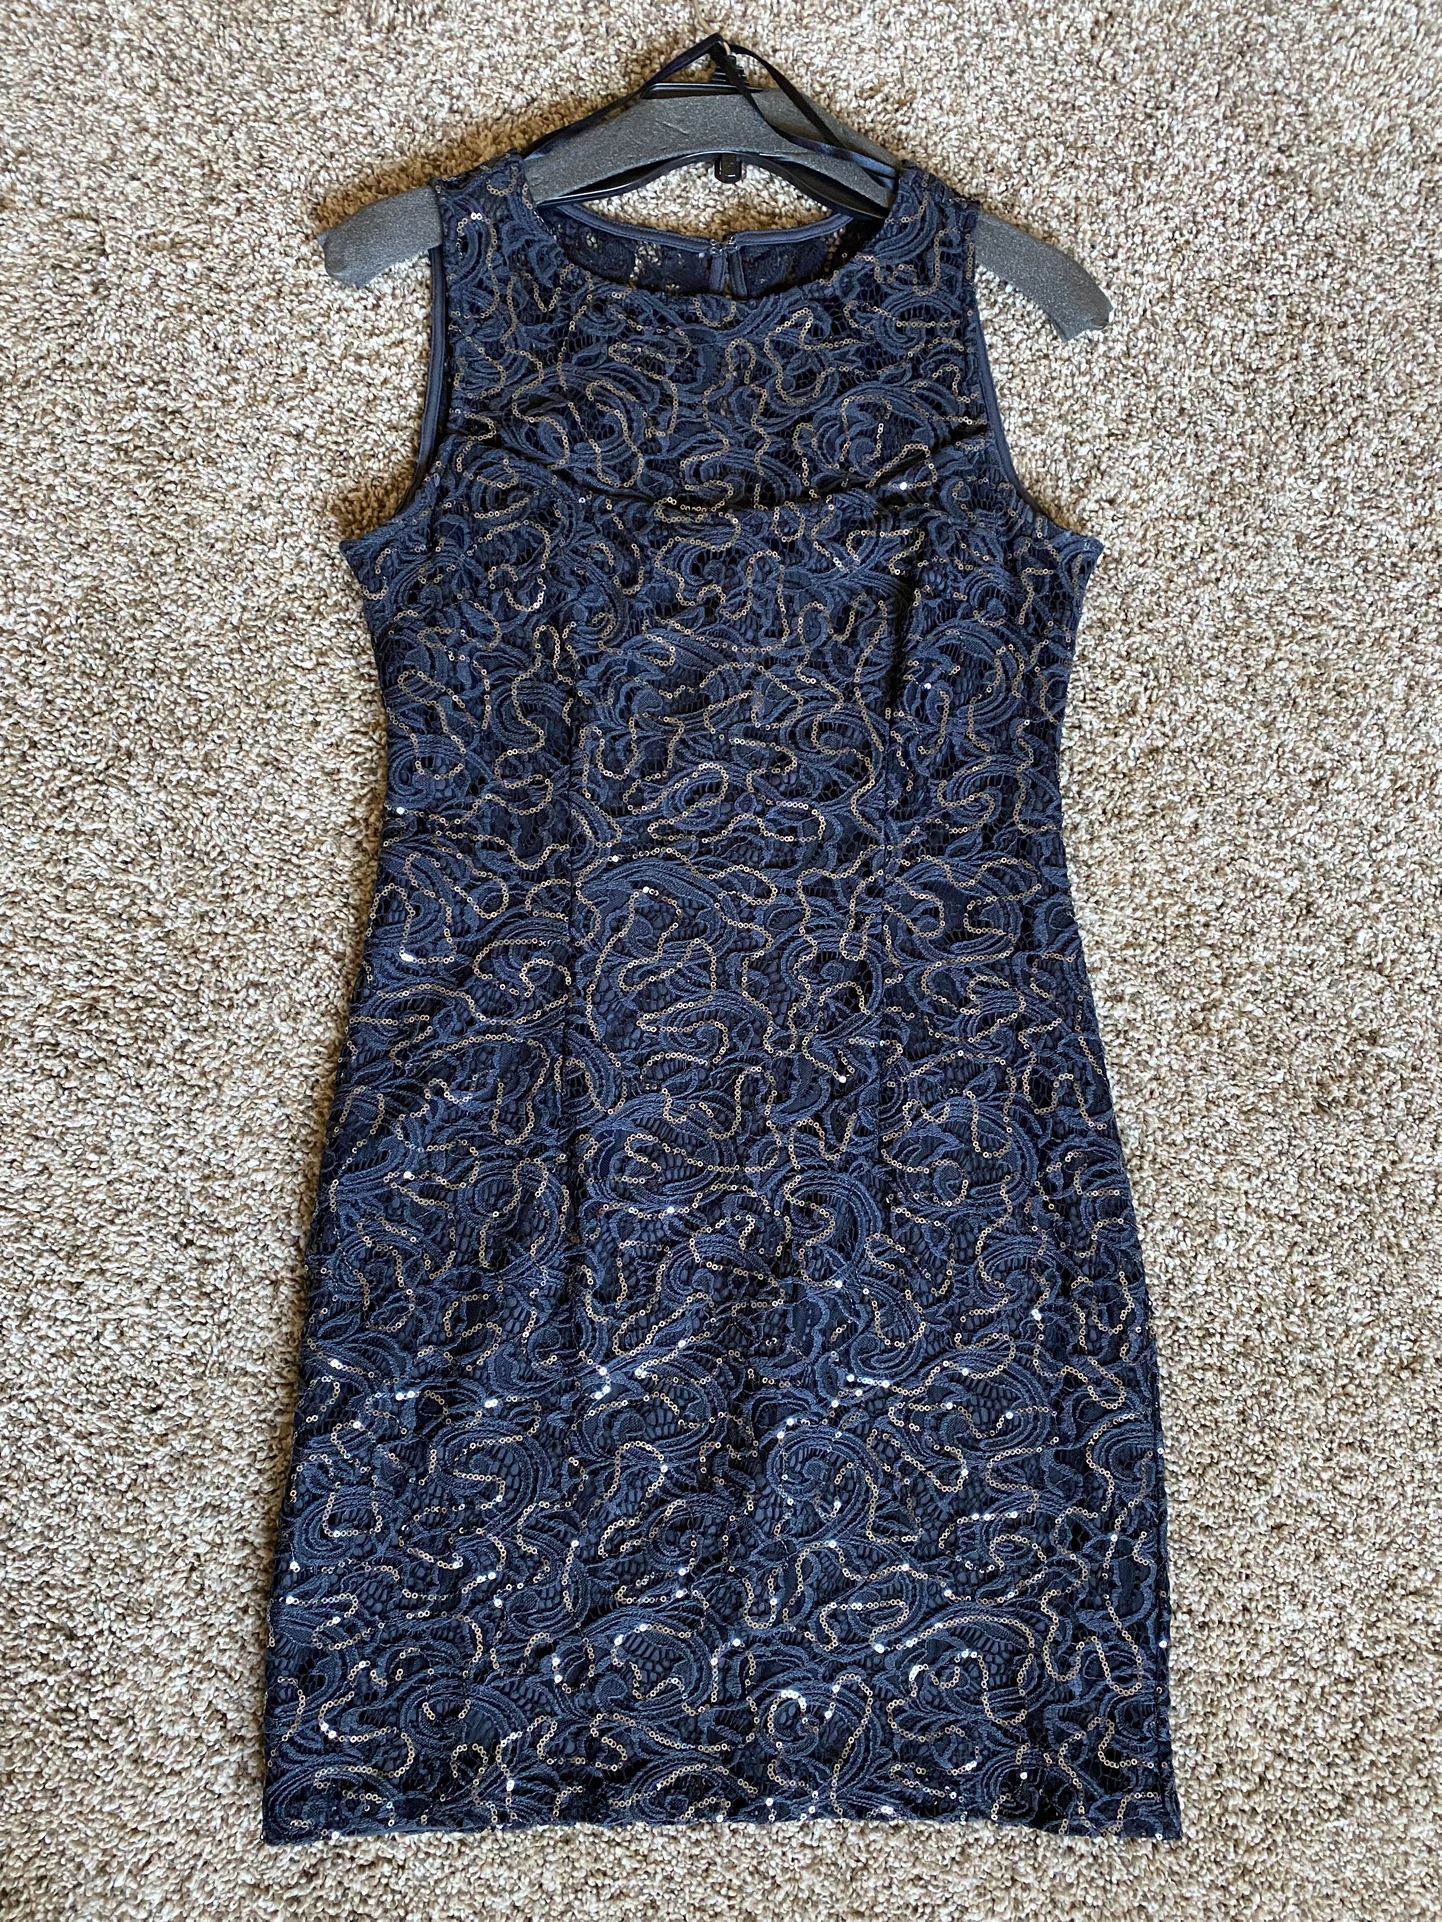 Blue Sequin Dress - Size 8